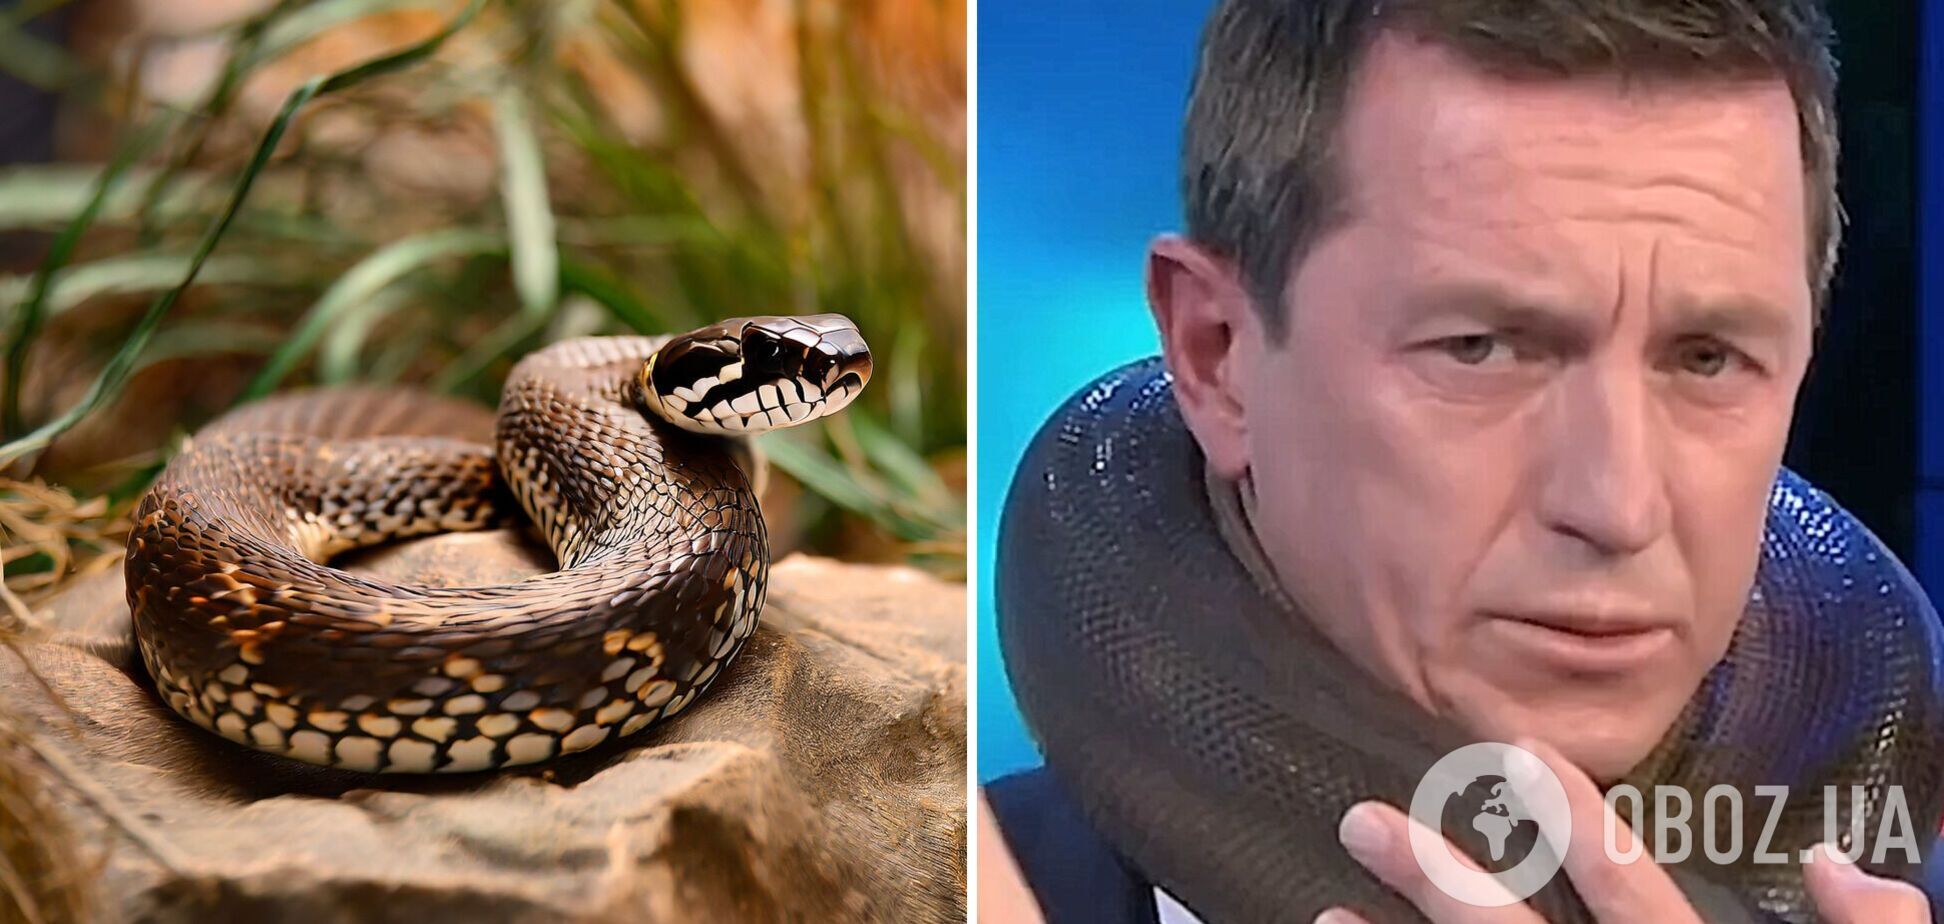 'Я не можу рухатися'. Змія ледве не задушила телезірку Австралії в прямому ефірі: жахливий момент потрапив на відео